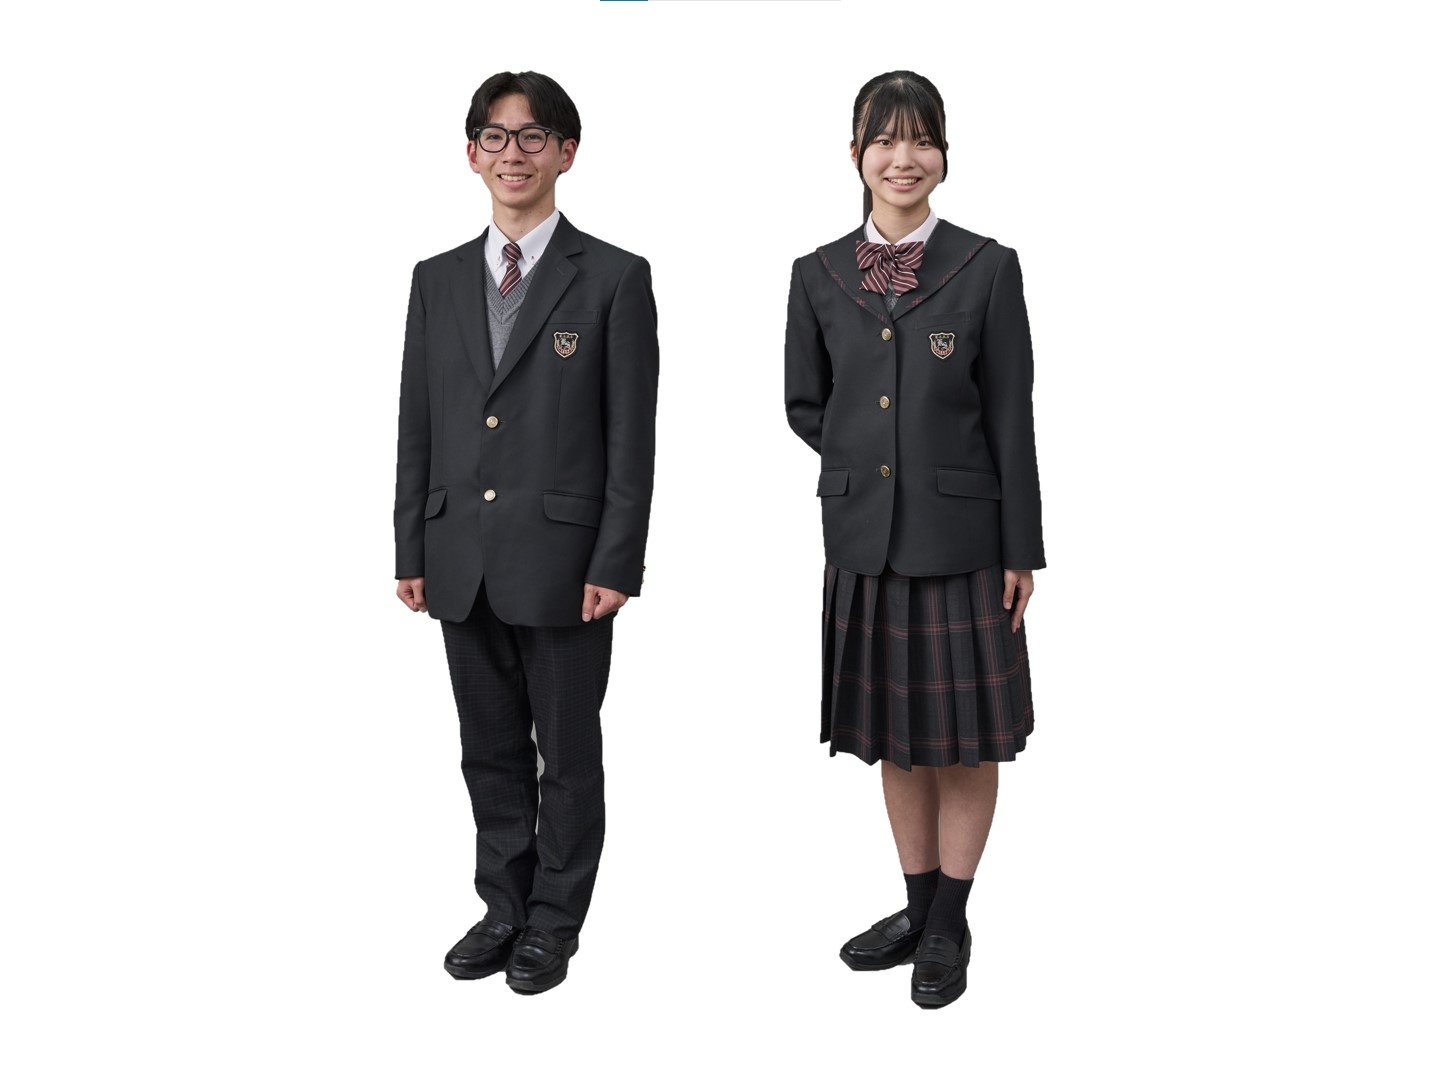 九州産業大学付属九州産業高等学校の制服